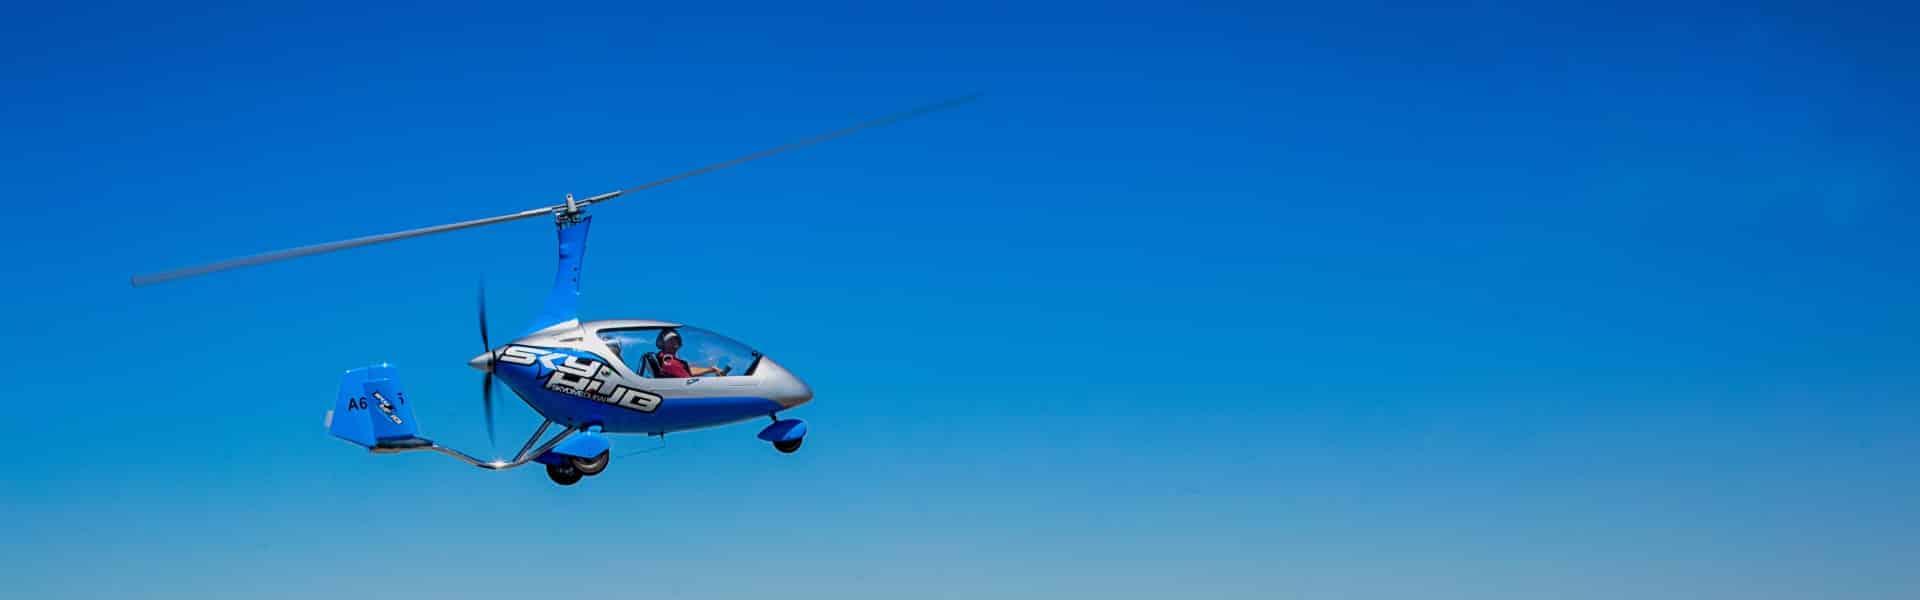 Gyrocopter Flight Experience Dubai-n